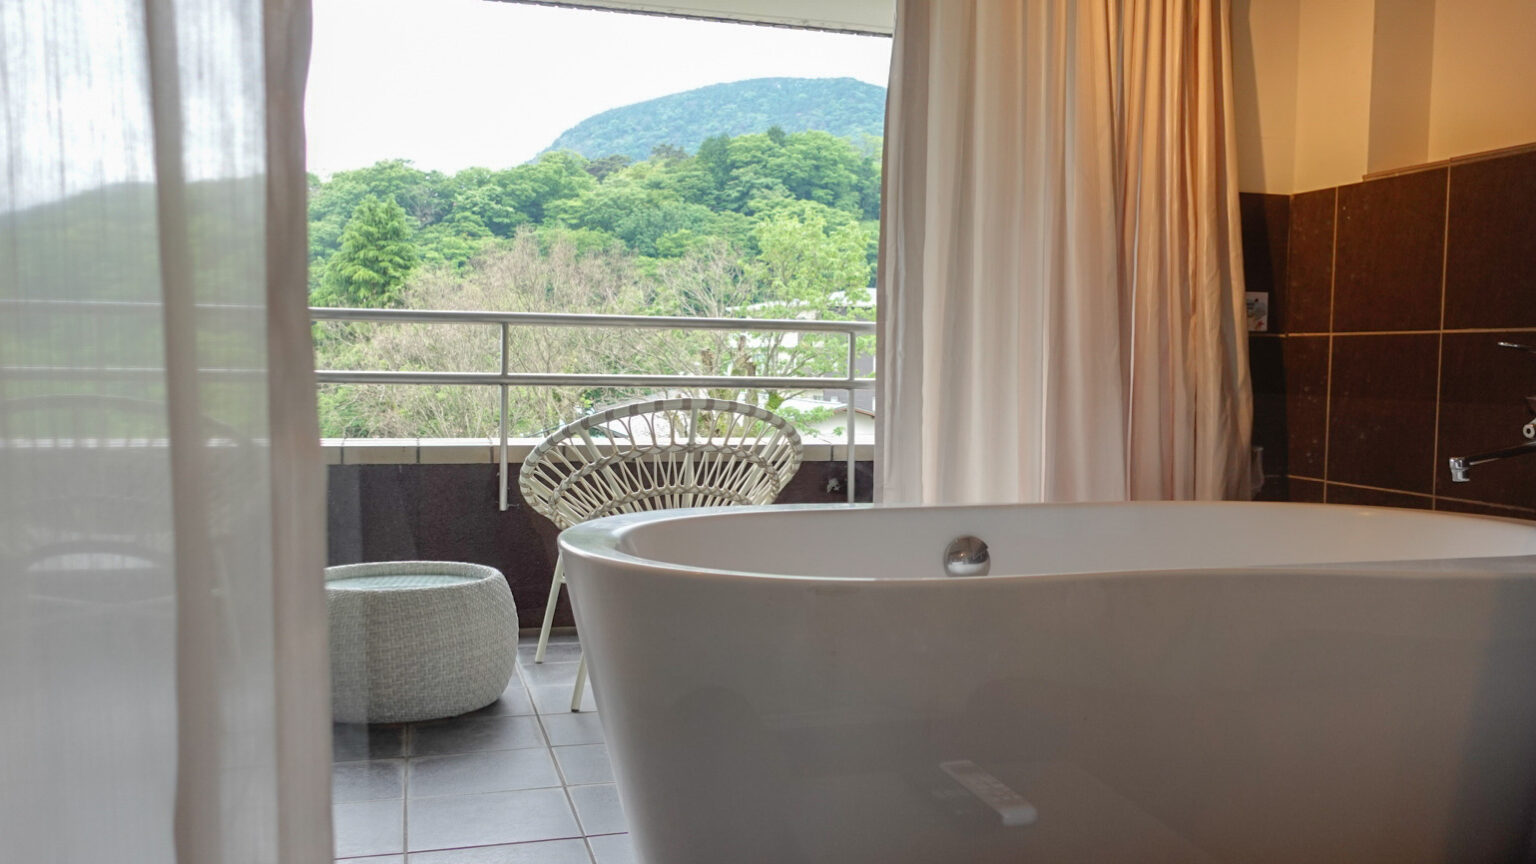 箱根の大自然を眺めながら楽しめる露天風呂付きのツインルーム。